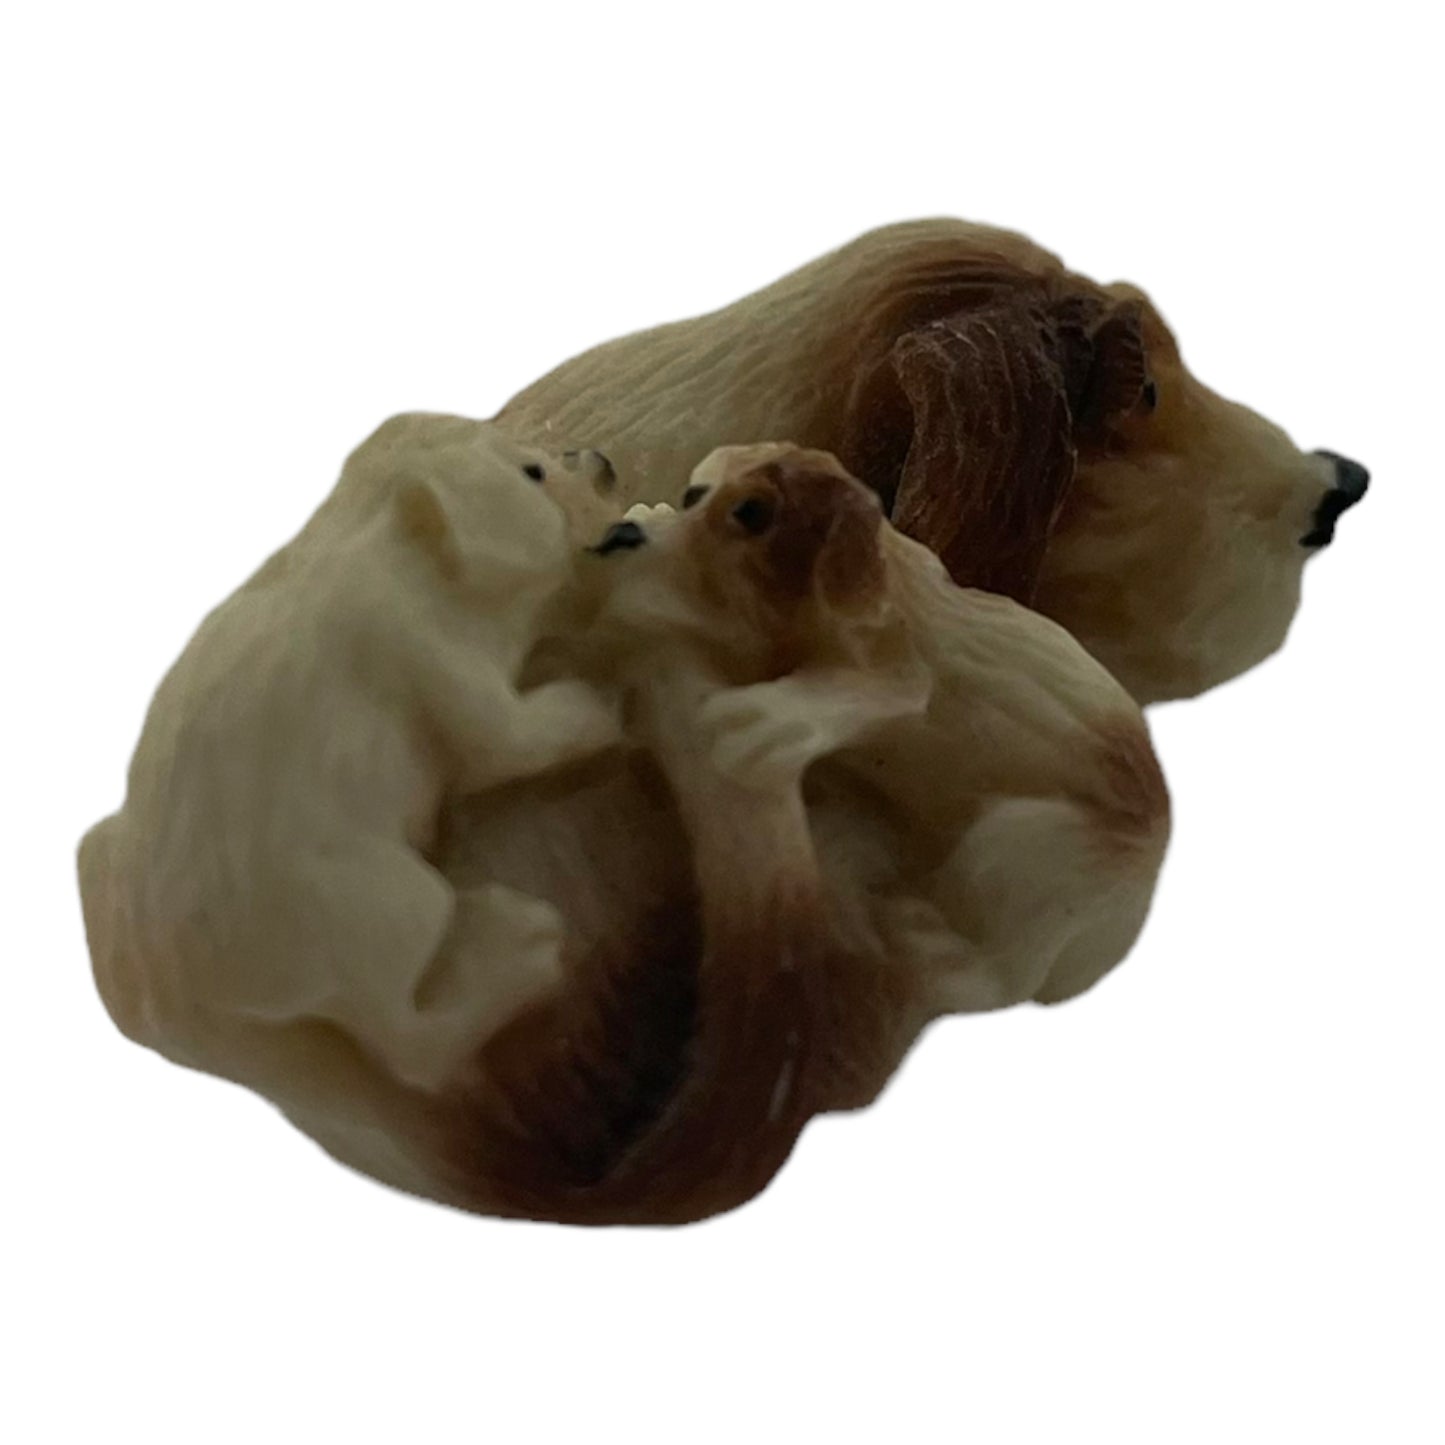 Mother Basset Hound with Puppies 1.75 Inch Vintage Figurine